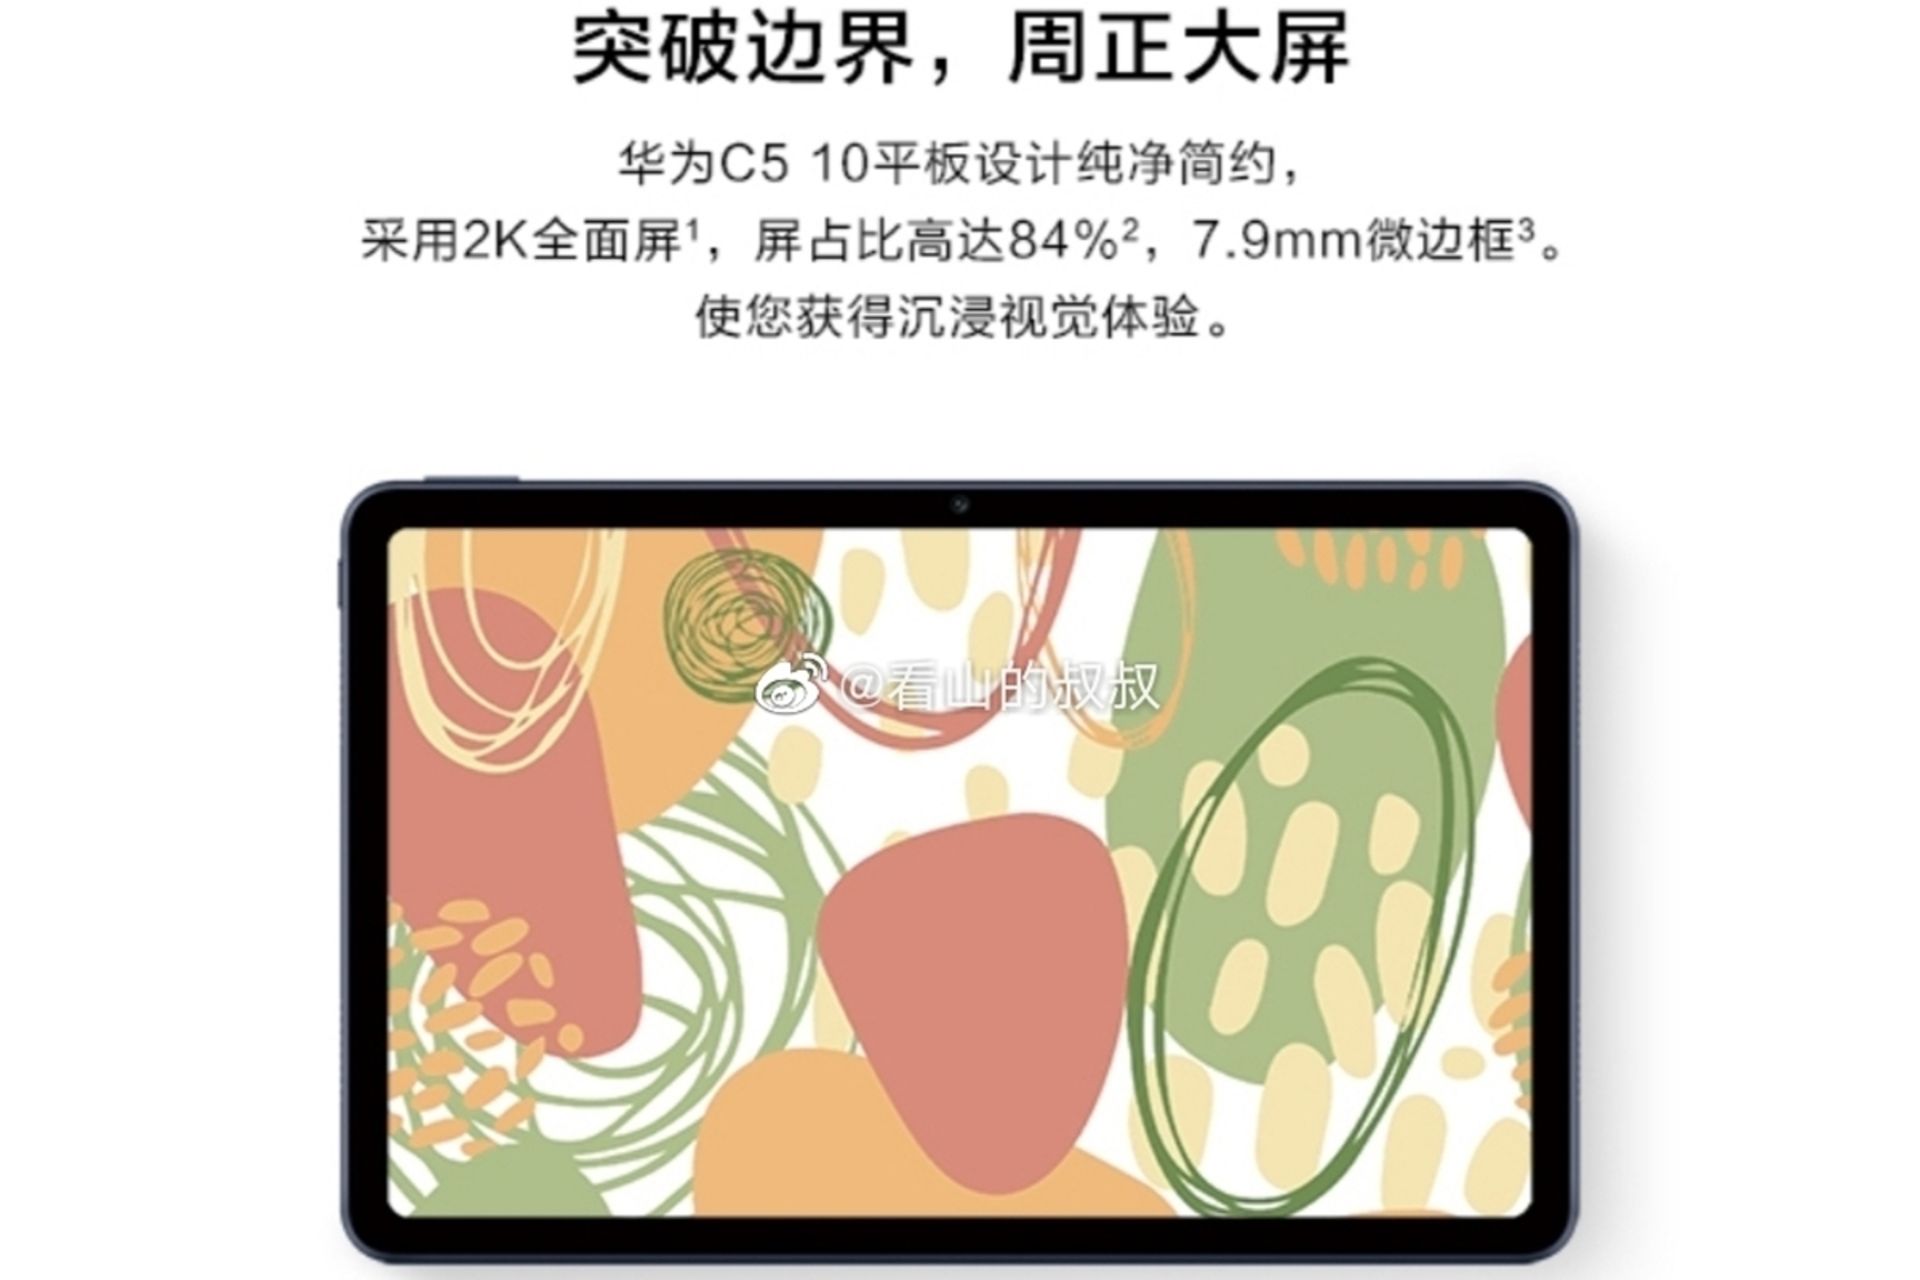 نمایشگر تبلت هواوی Huawei Tablet C5 10 با توضیحات چینی